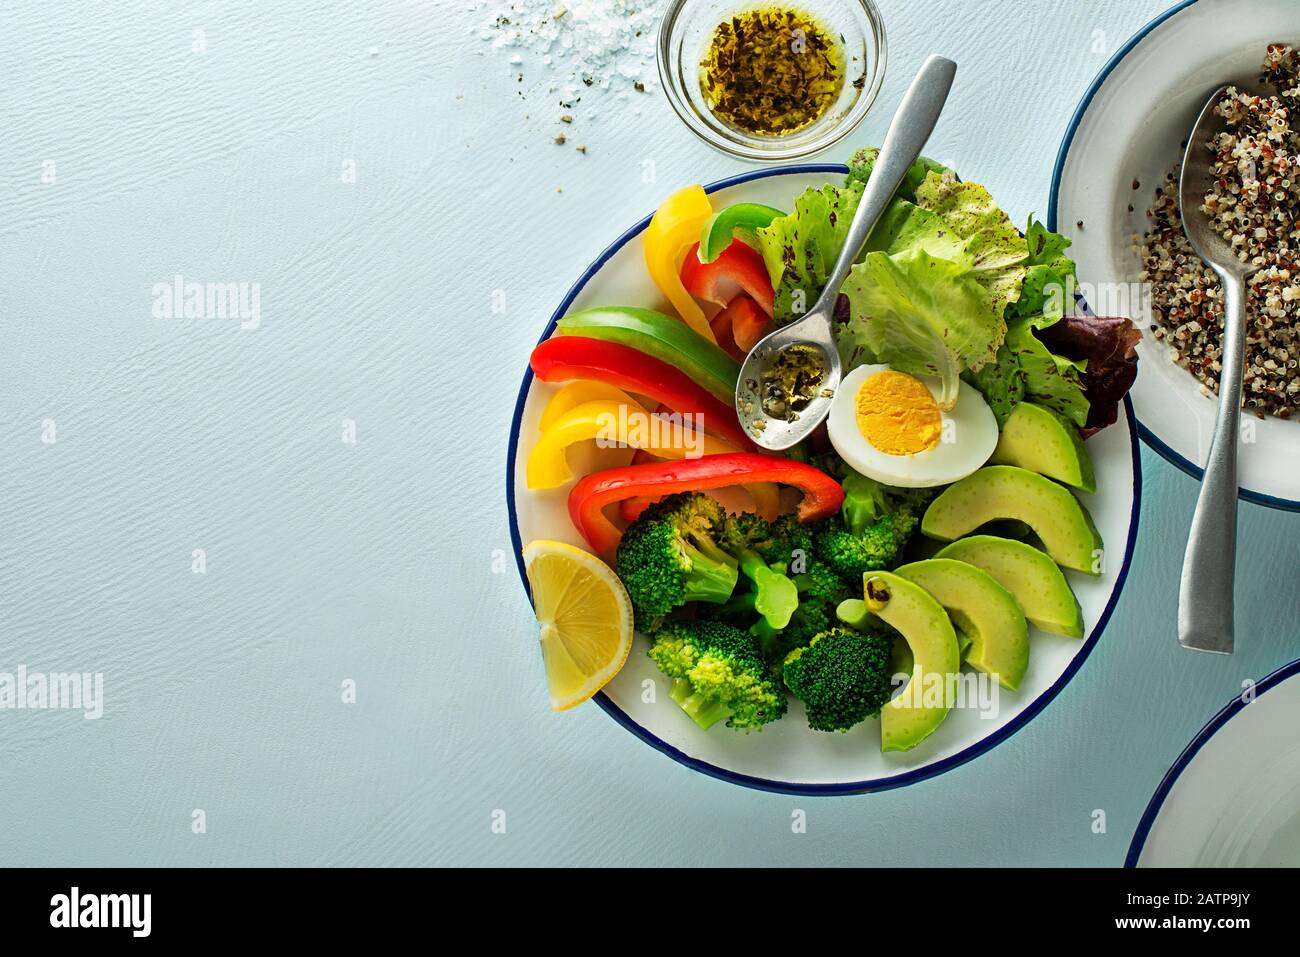 Repas de salade sain avec quinoa, oeuf et légumes frais mélangés sur fond bleu vue de dessus. Alimentation et santé. Concept de repas sain Banque D'Images